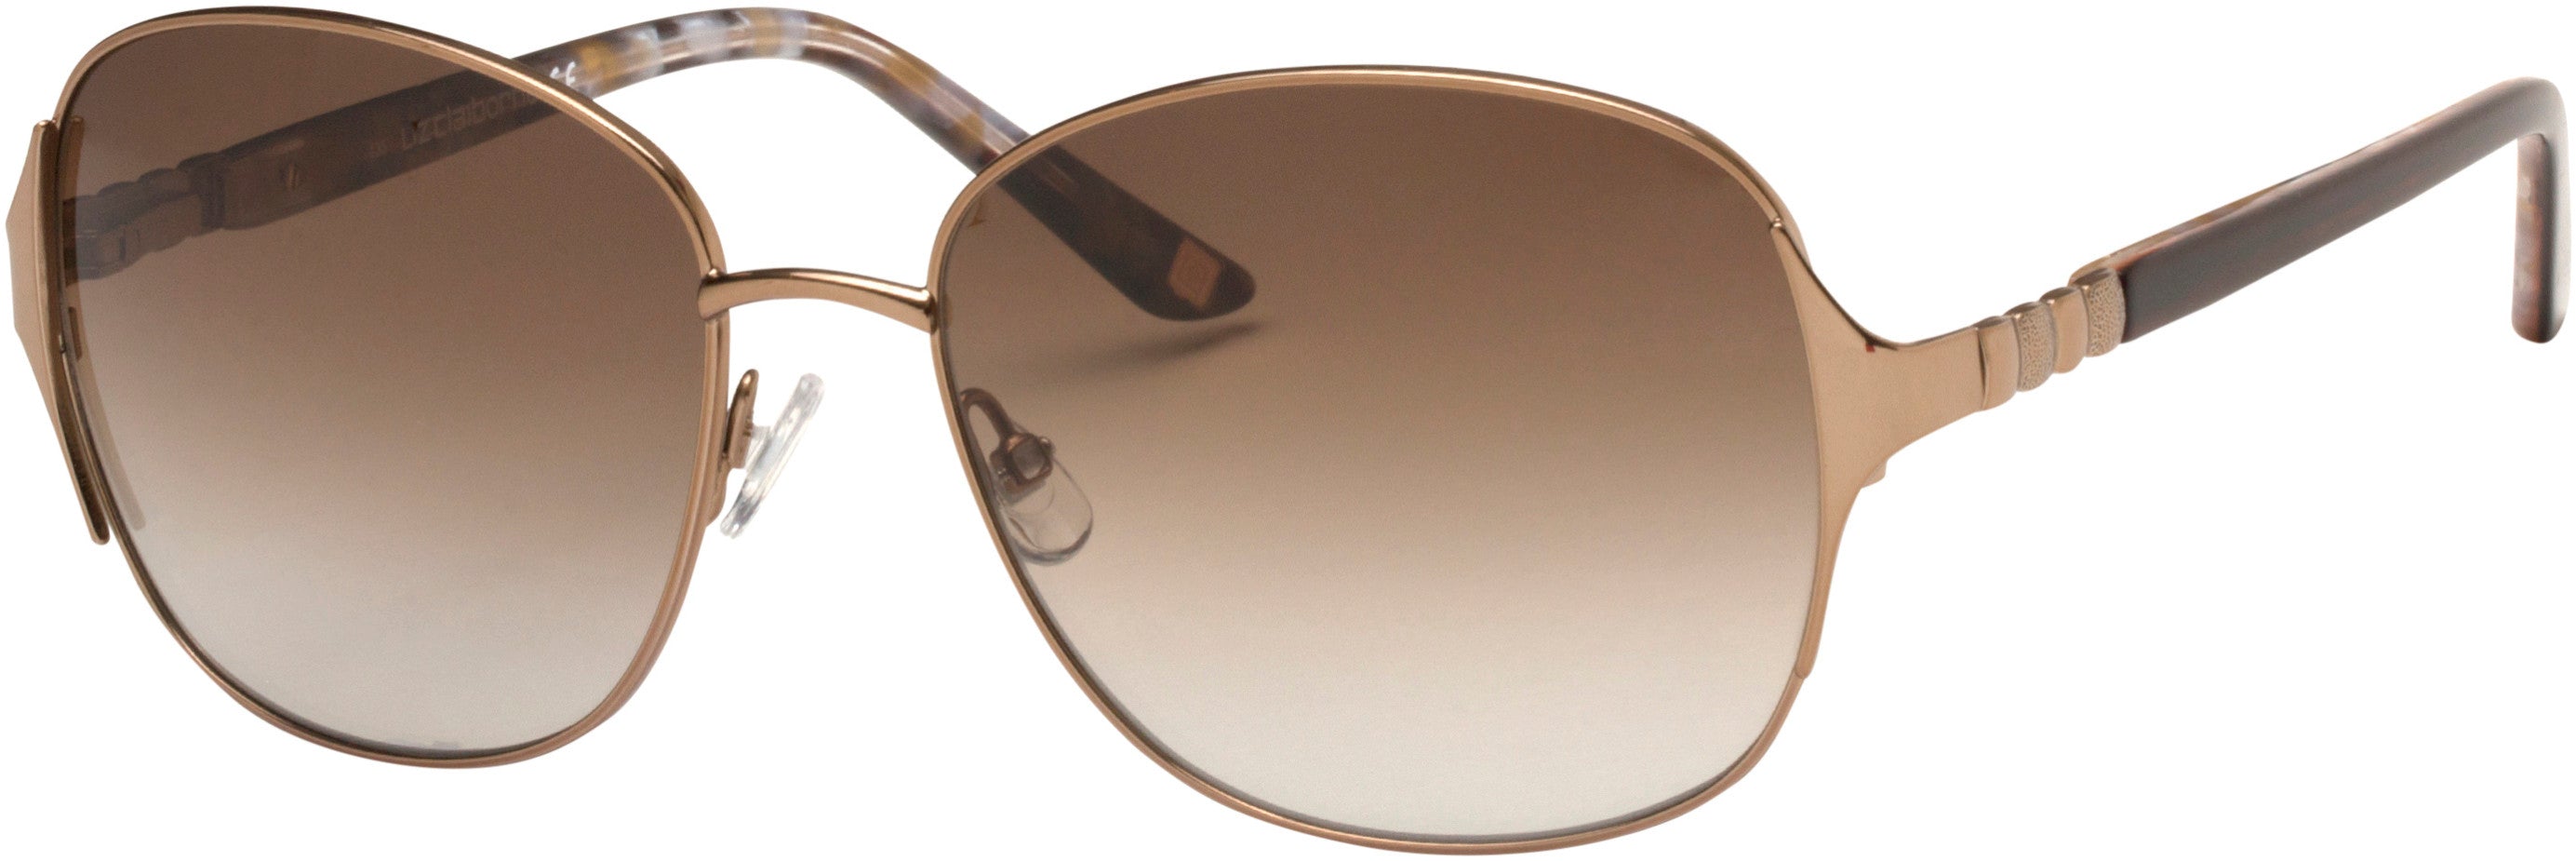  Liz Claiborne 568/S Oval Modified Sunglasses 0TUI-0TUI  Light Brown (HA Brown Gradient)